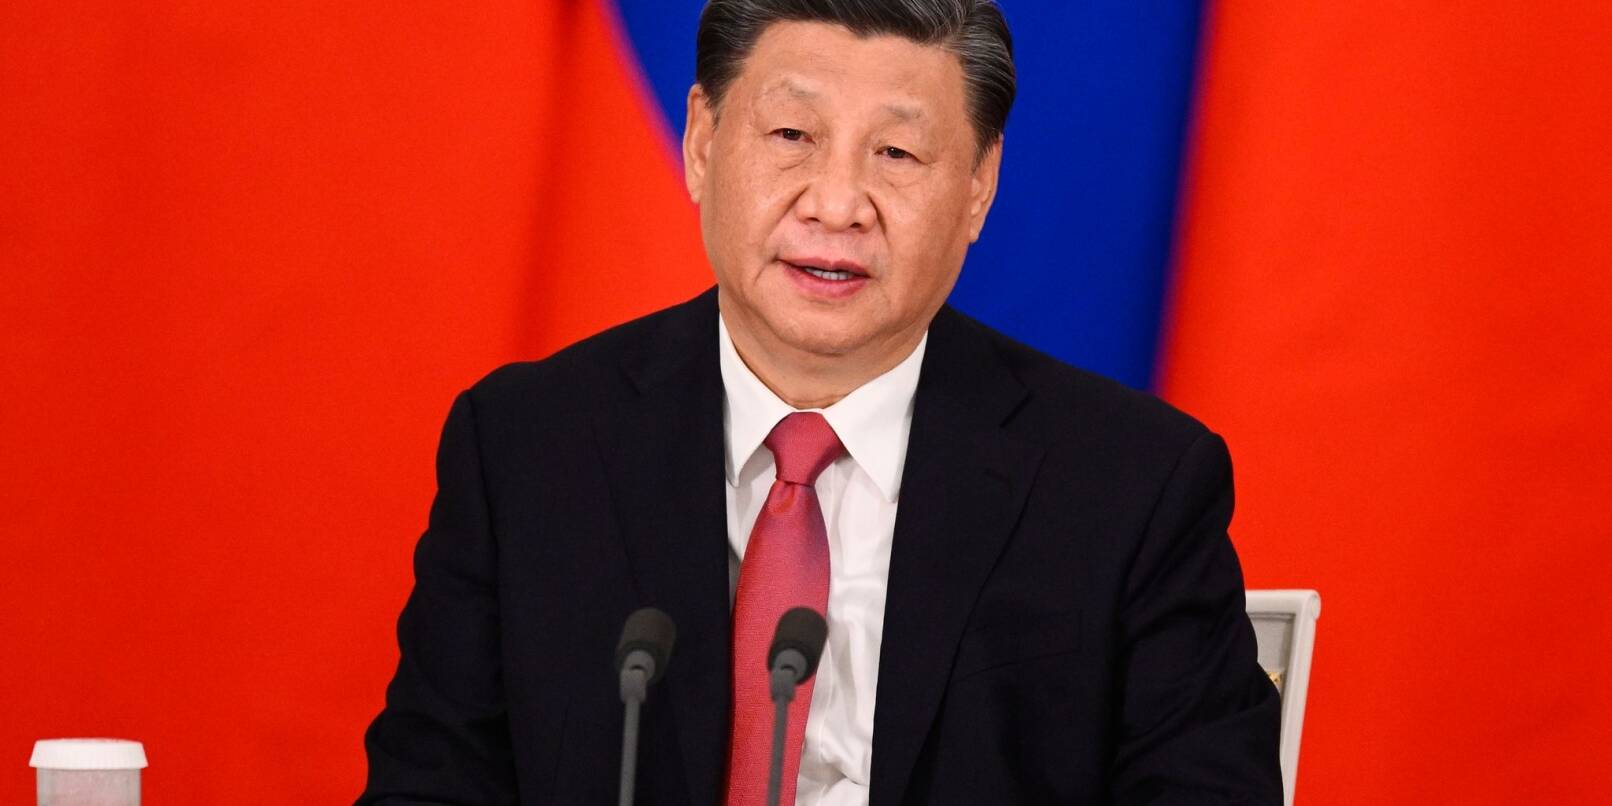 Chinas Präsident Xi Jinping hat an wirtschaftliche Beziehungen mit Honduras Forderungen geknüpft.